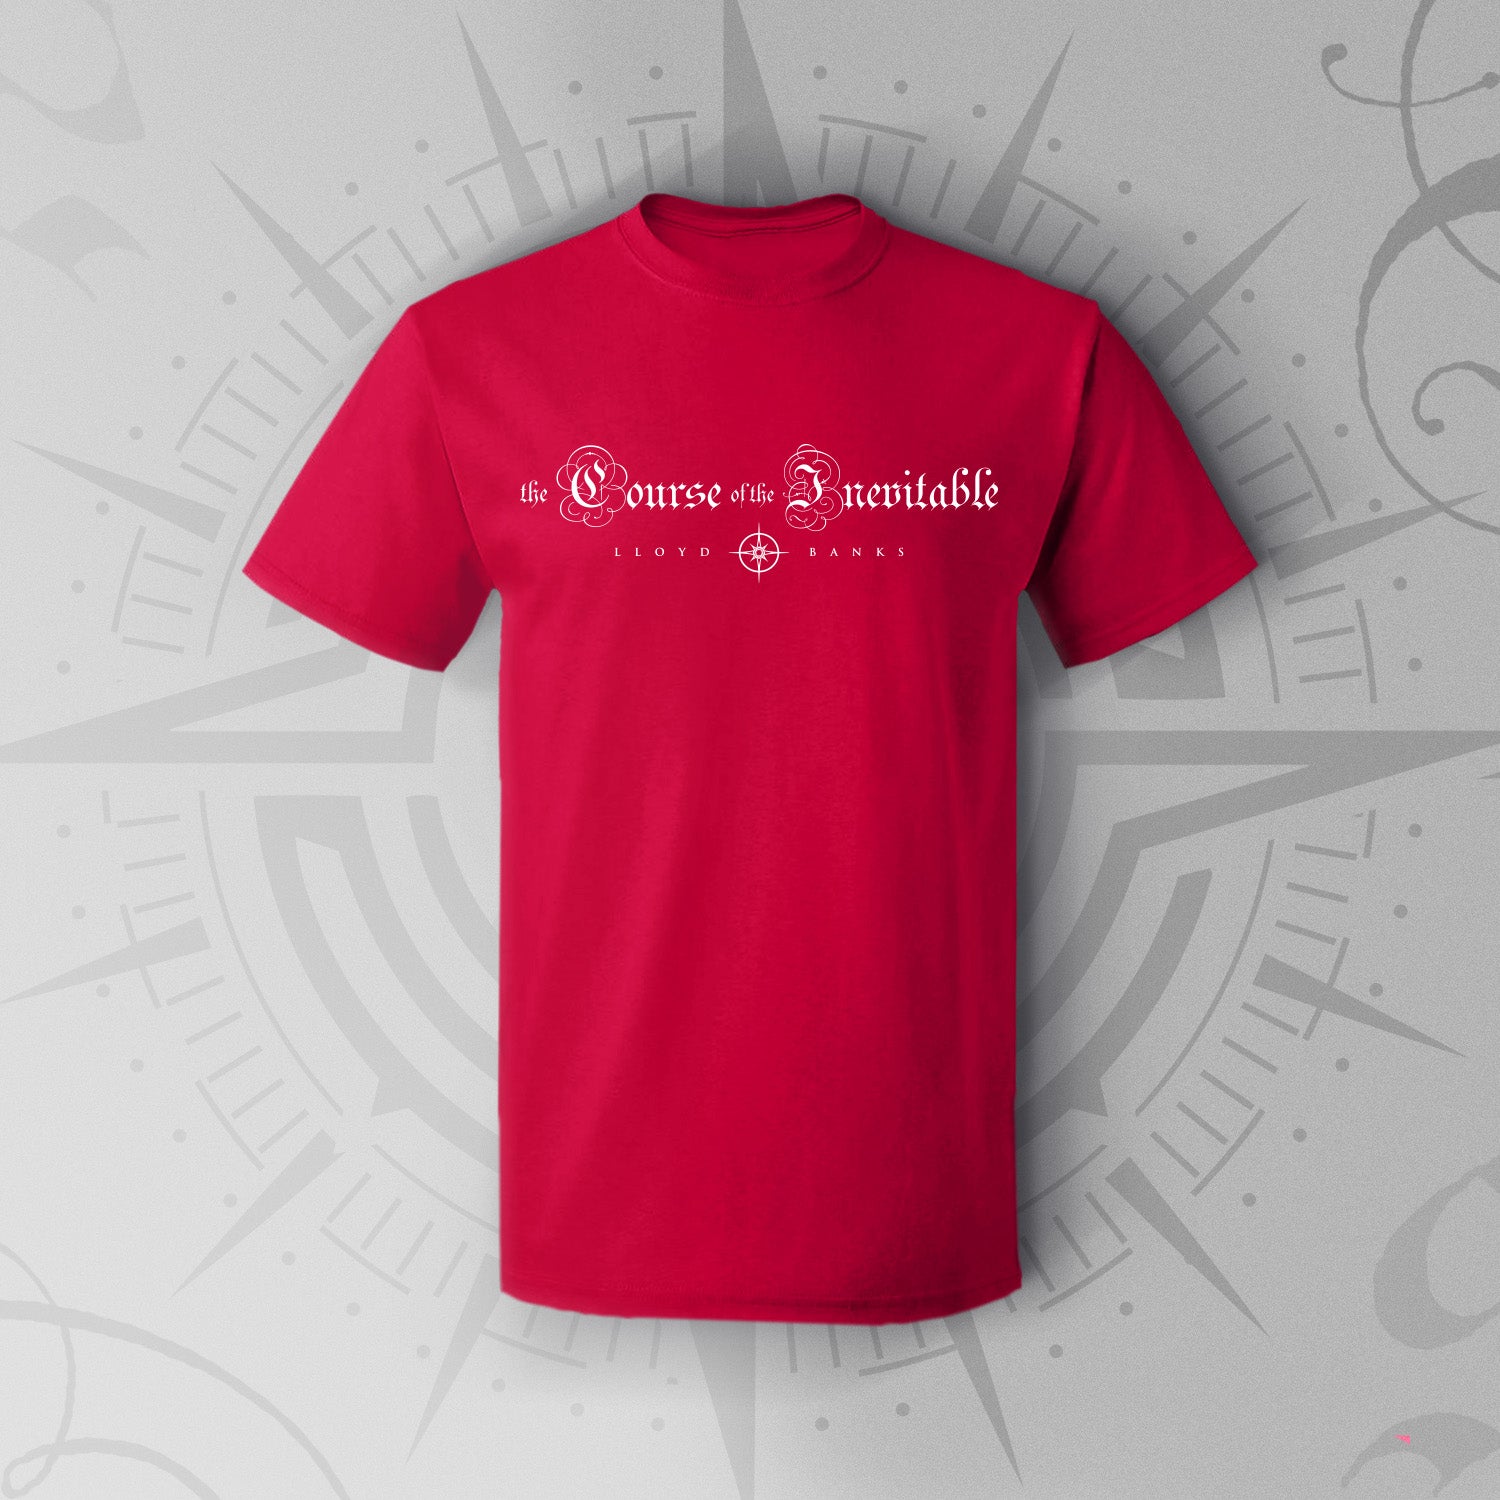 cardinal t shirt designs